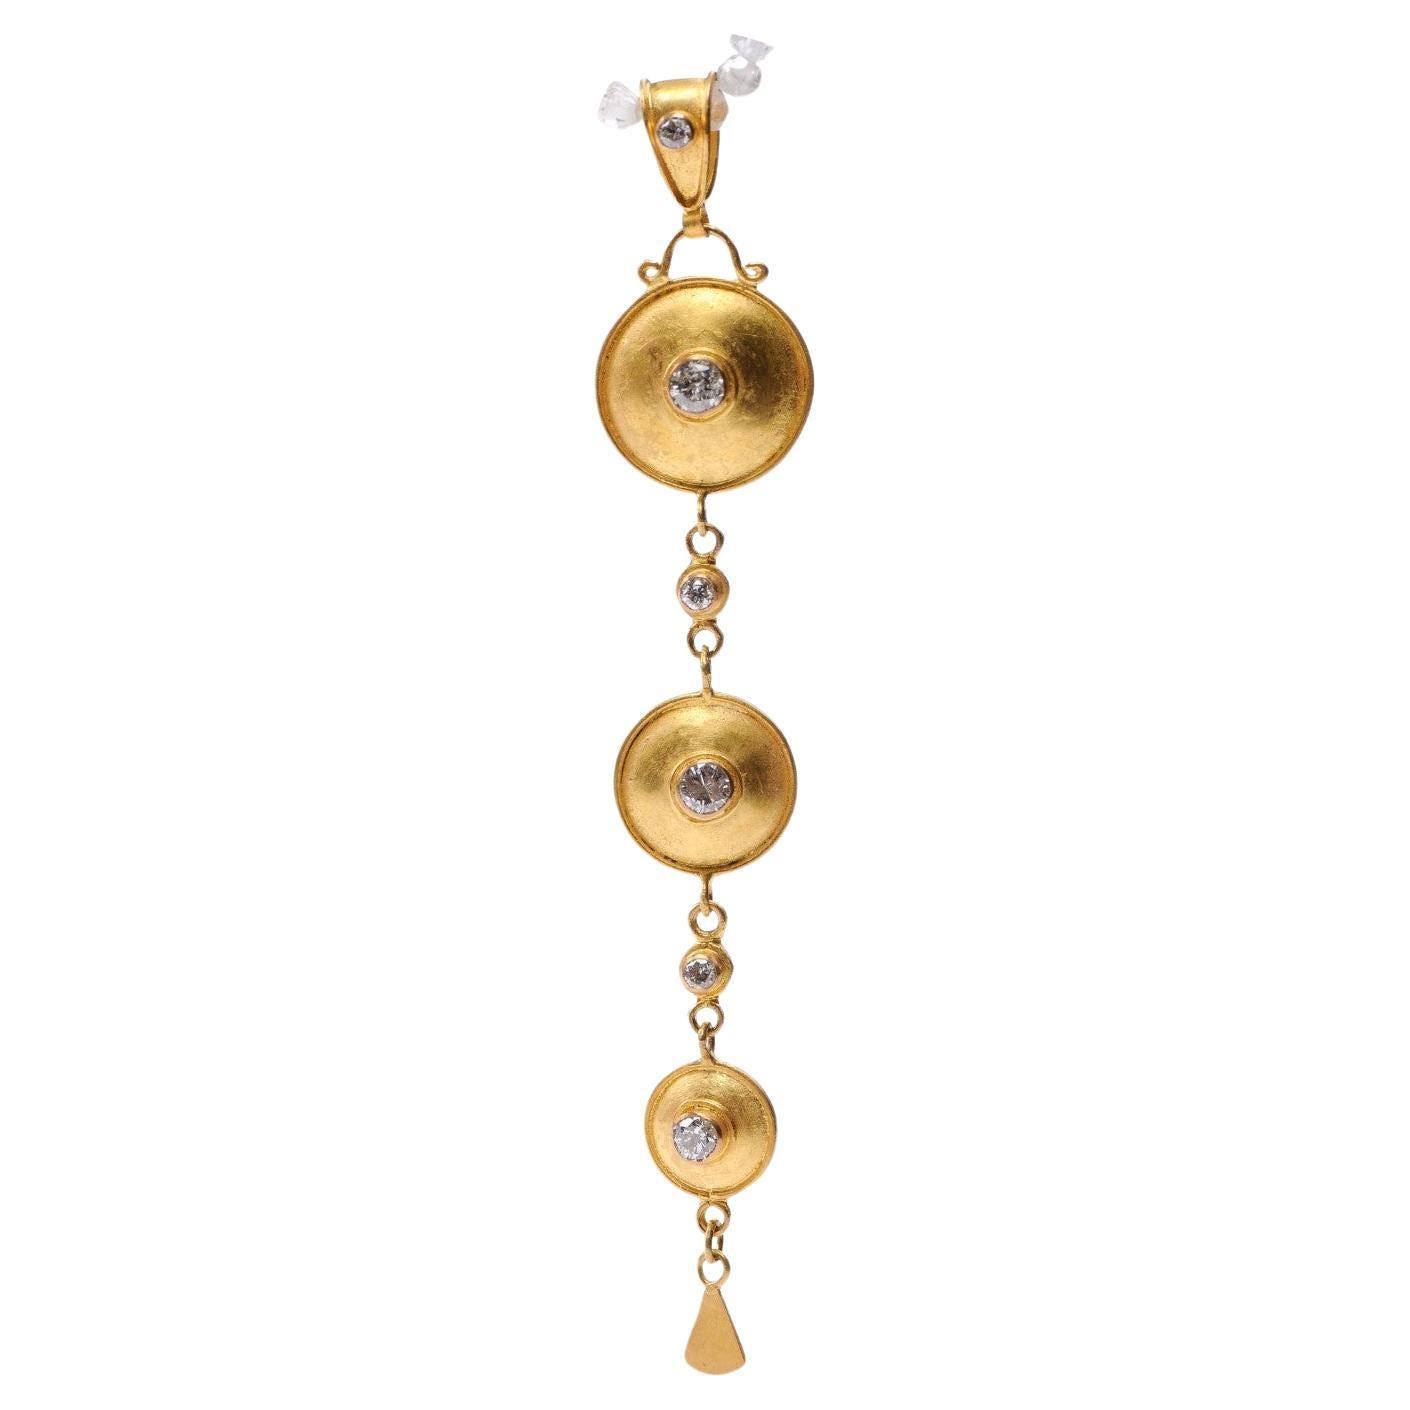 Pendentif de style étrusque en or et diamants (pendentif uniquement)